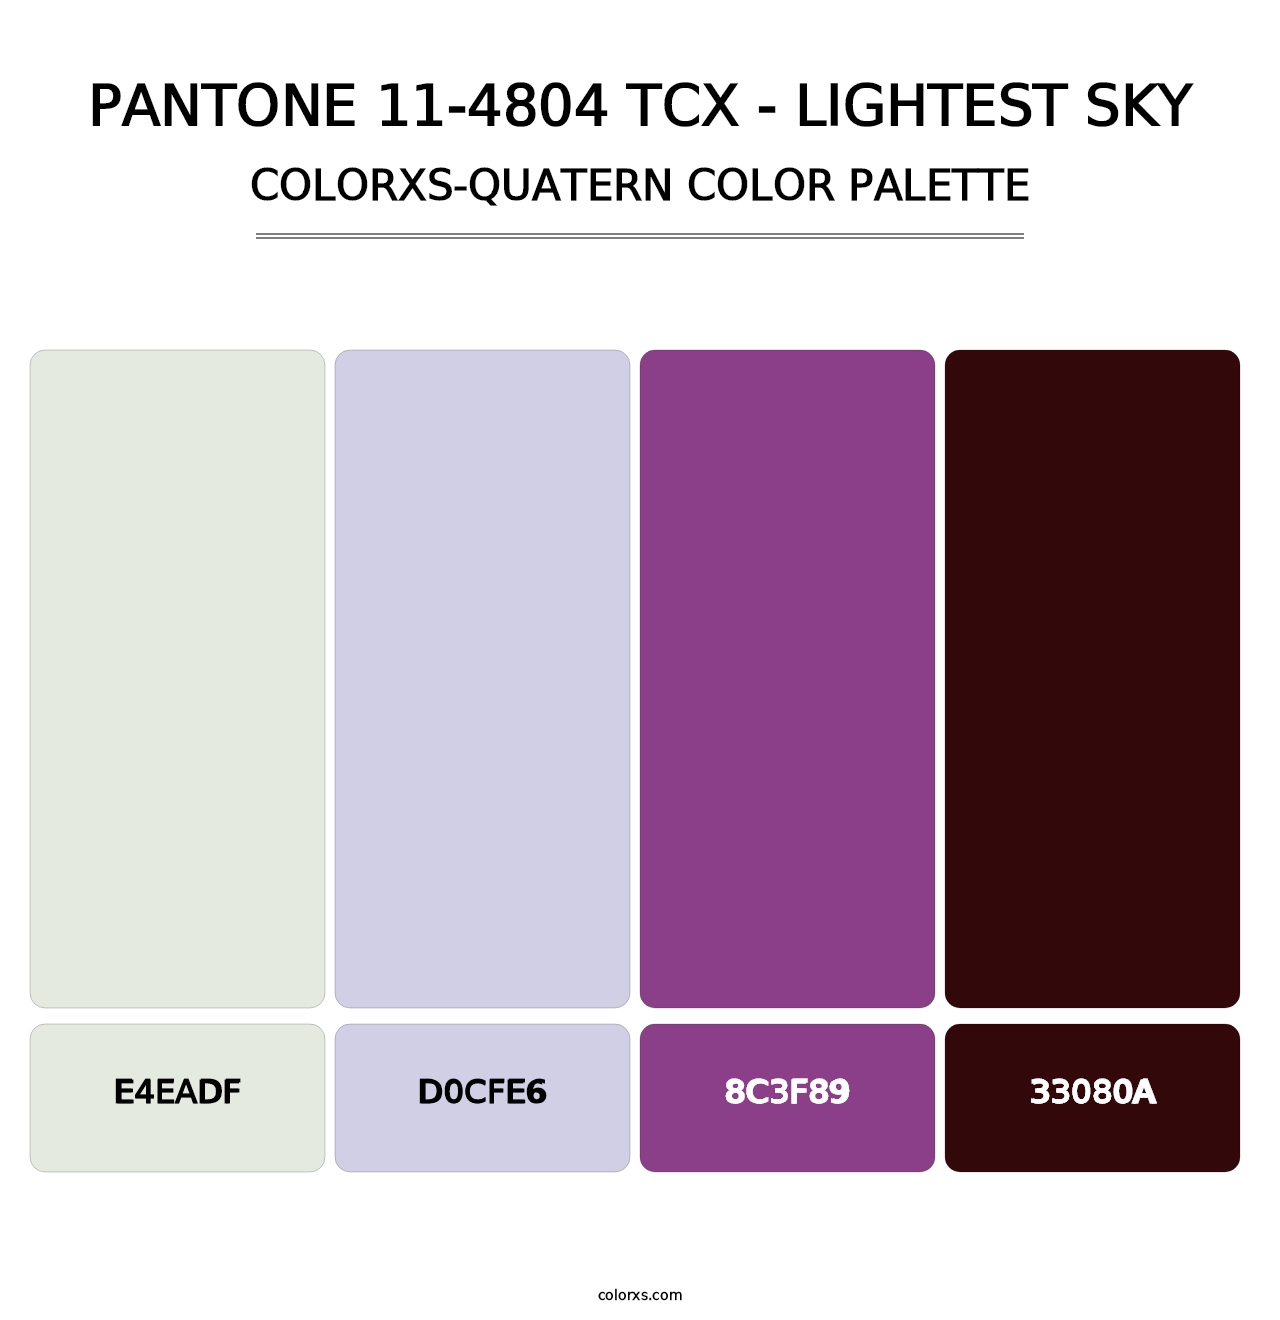 PANTONE 11-4804 TCX - Lightest Sky - Colorxs Quatern Palette